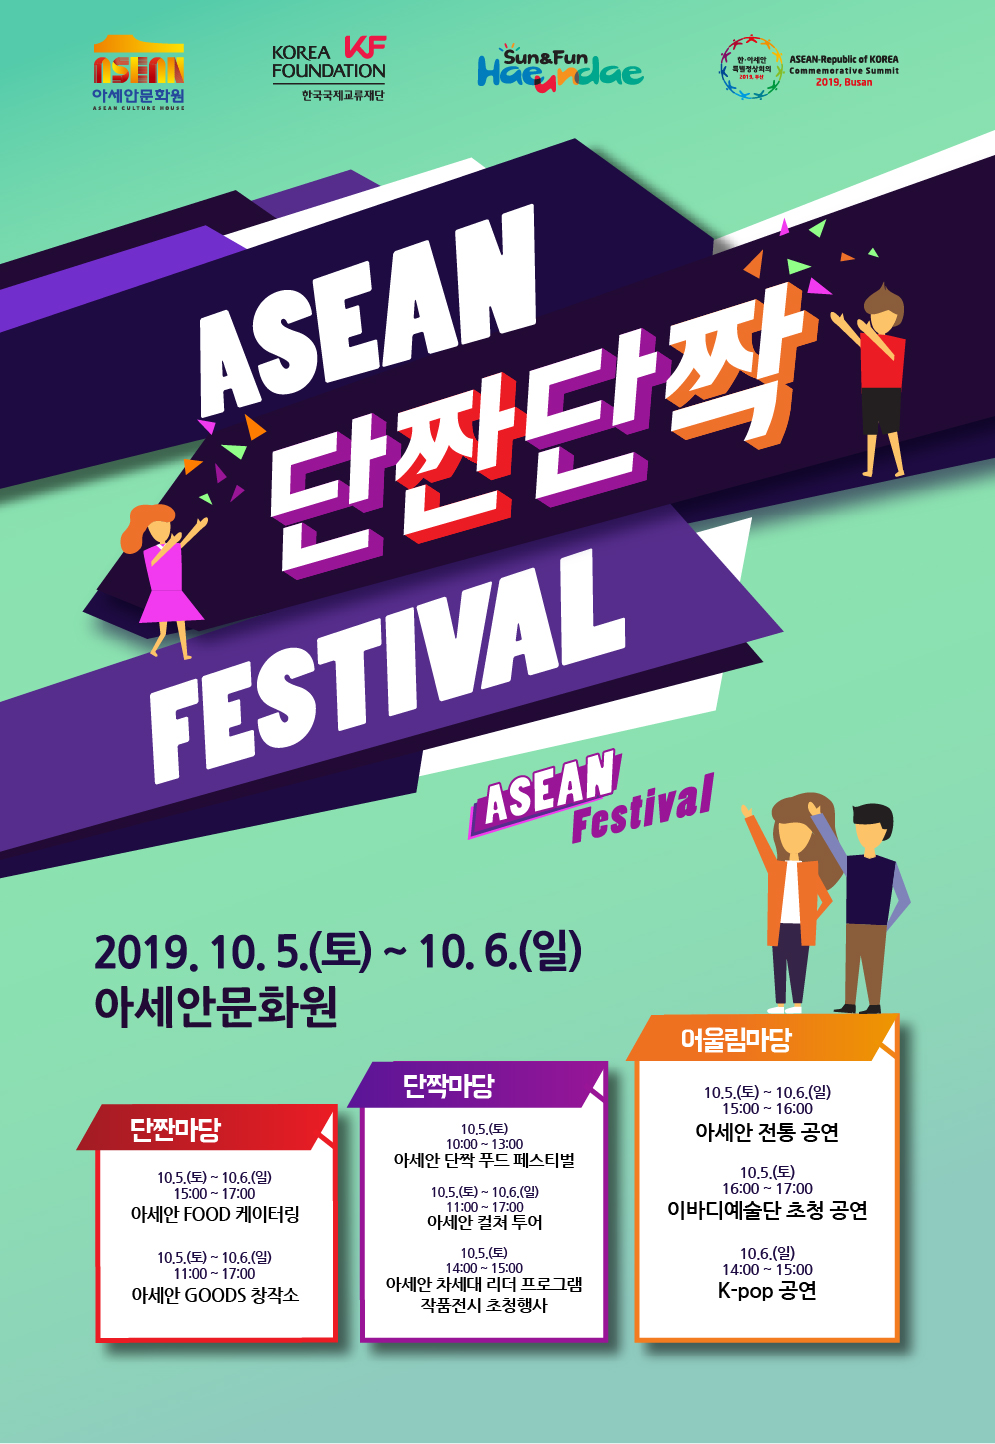 <2019 ASEAN 단짠단짝 페스티벌> 개최